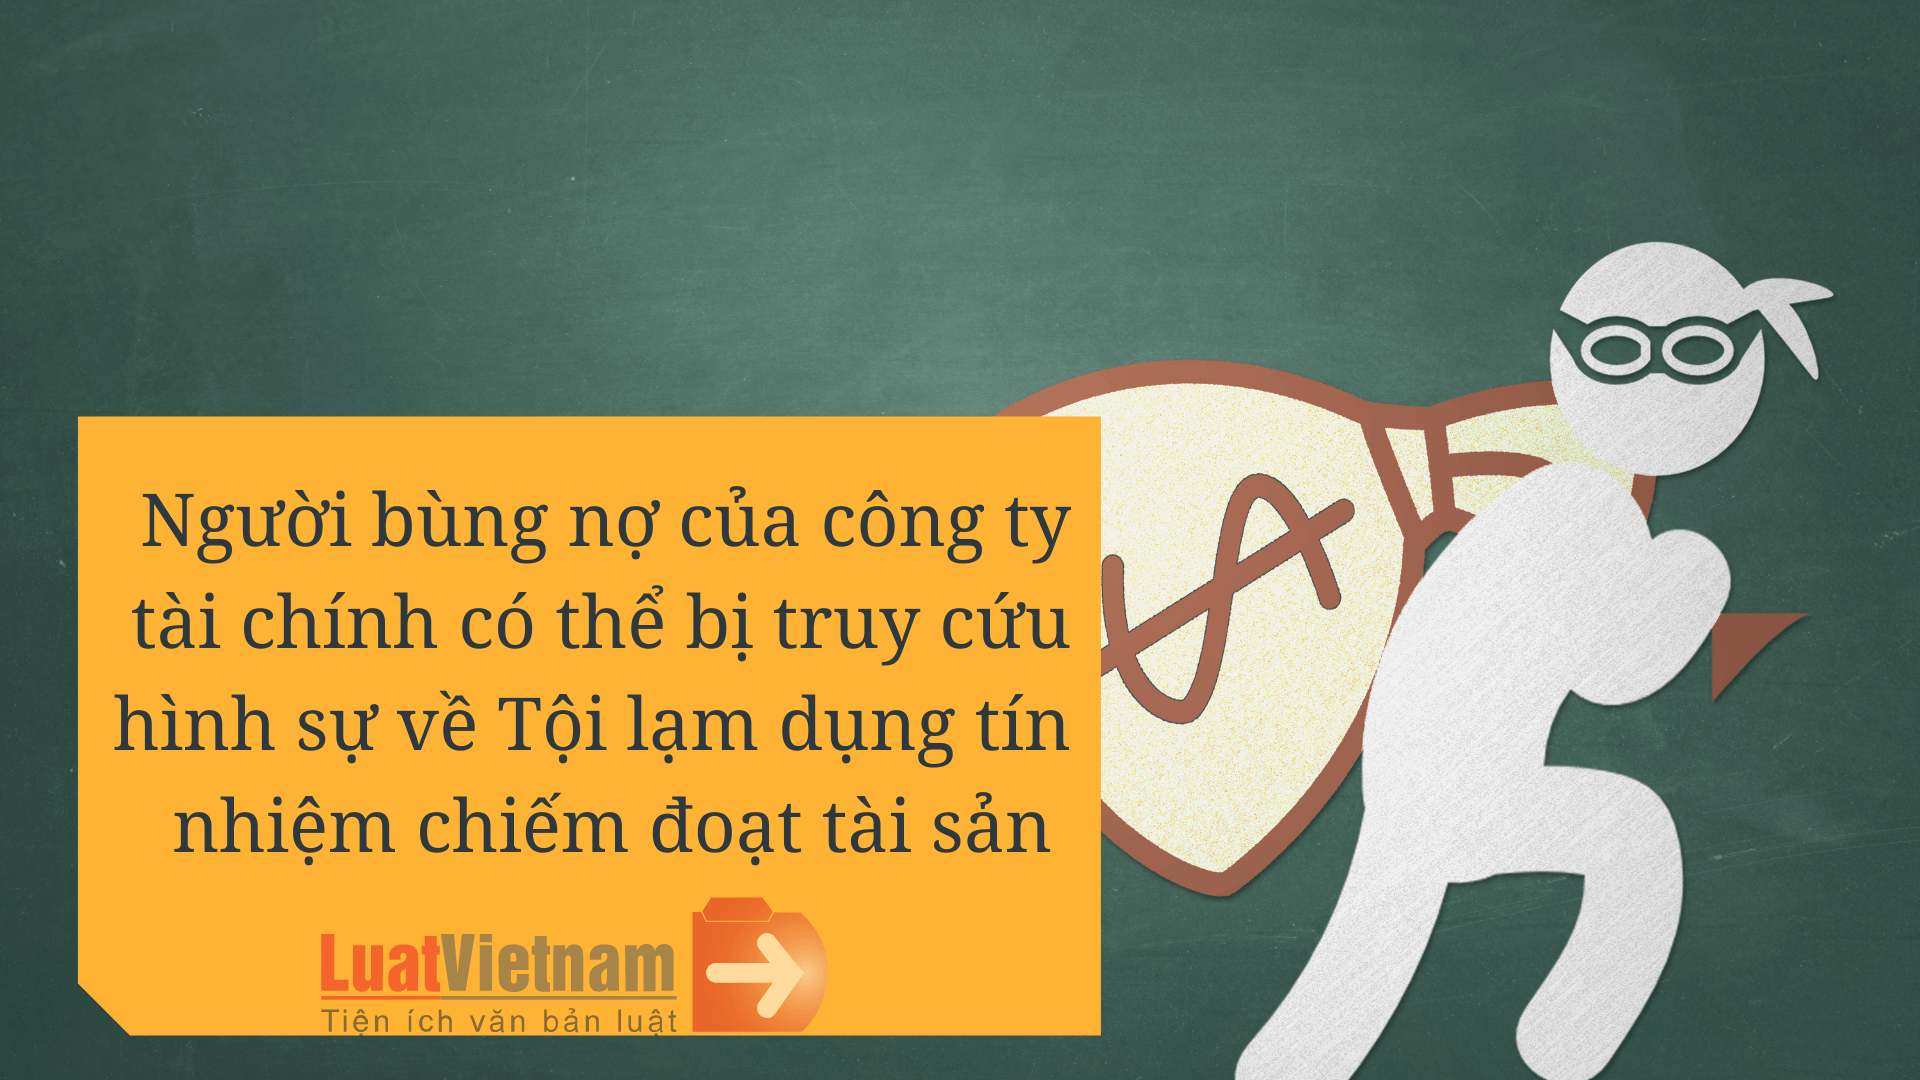 vay tien cong ty tai chinh (1) 3108144812